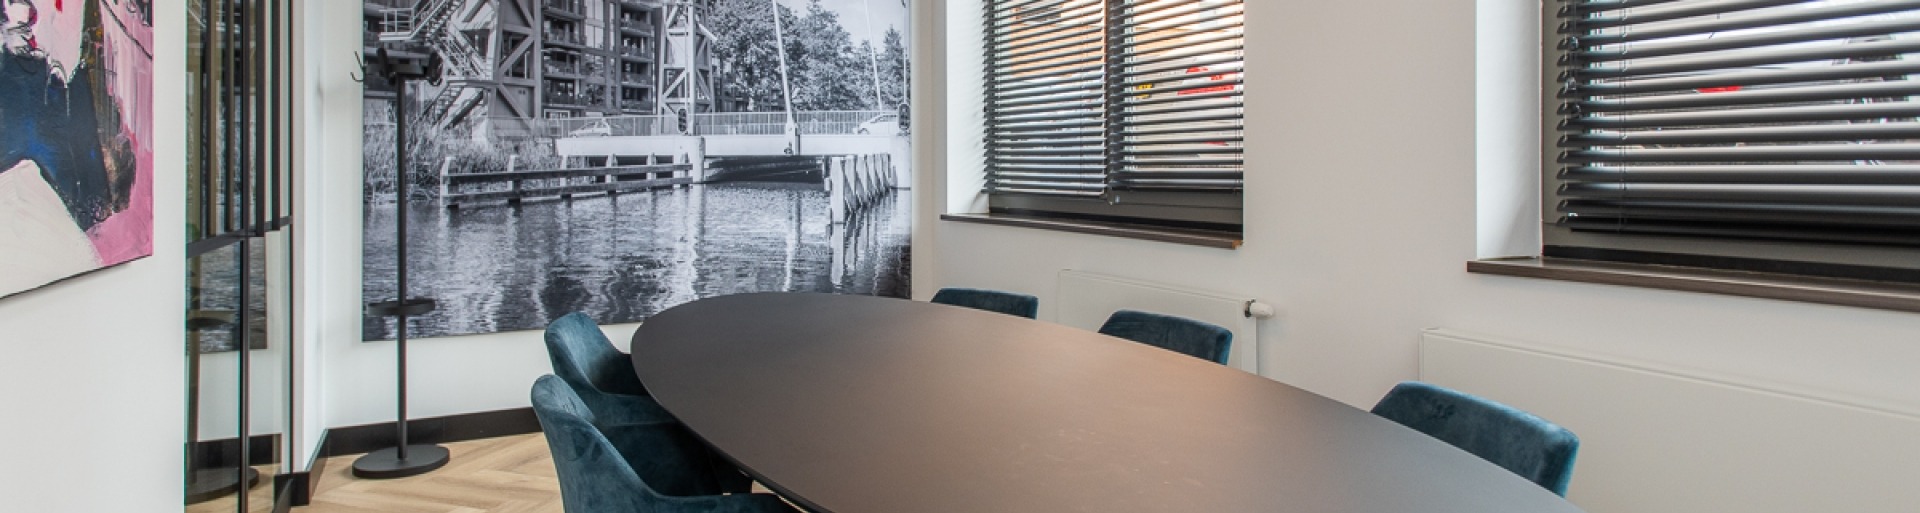 De spreekkamer bij T&W Tilburg met een grote zwarte tafel en blauwe stoelen